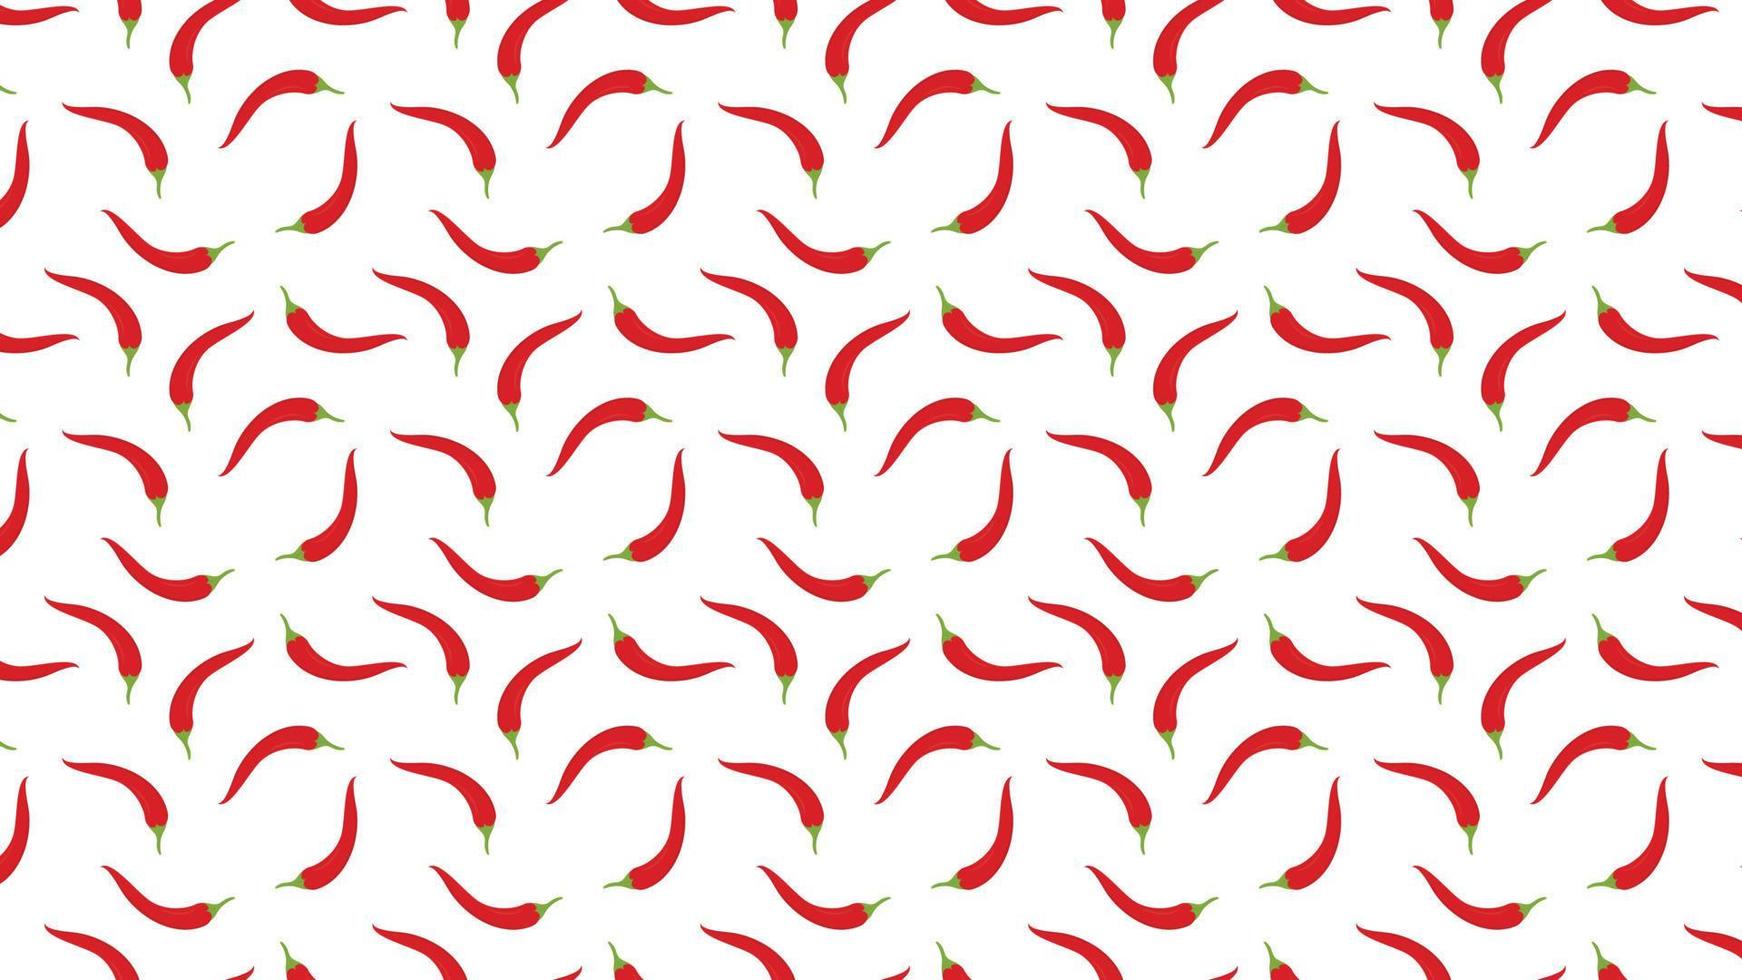 Chili pattern wallpaper. Chili symbol vector. vector